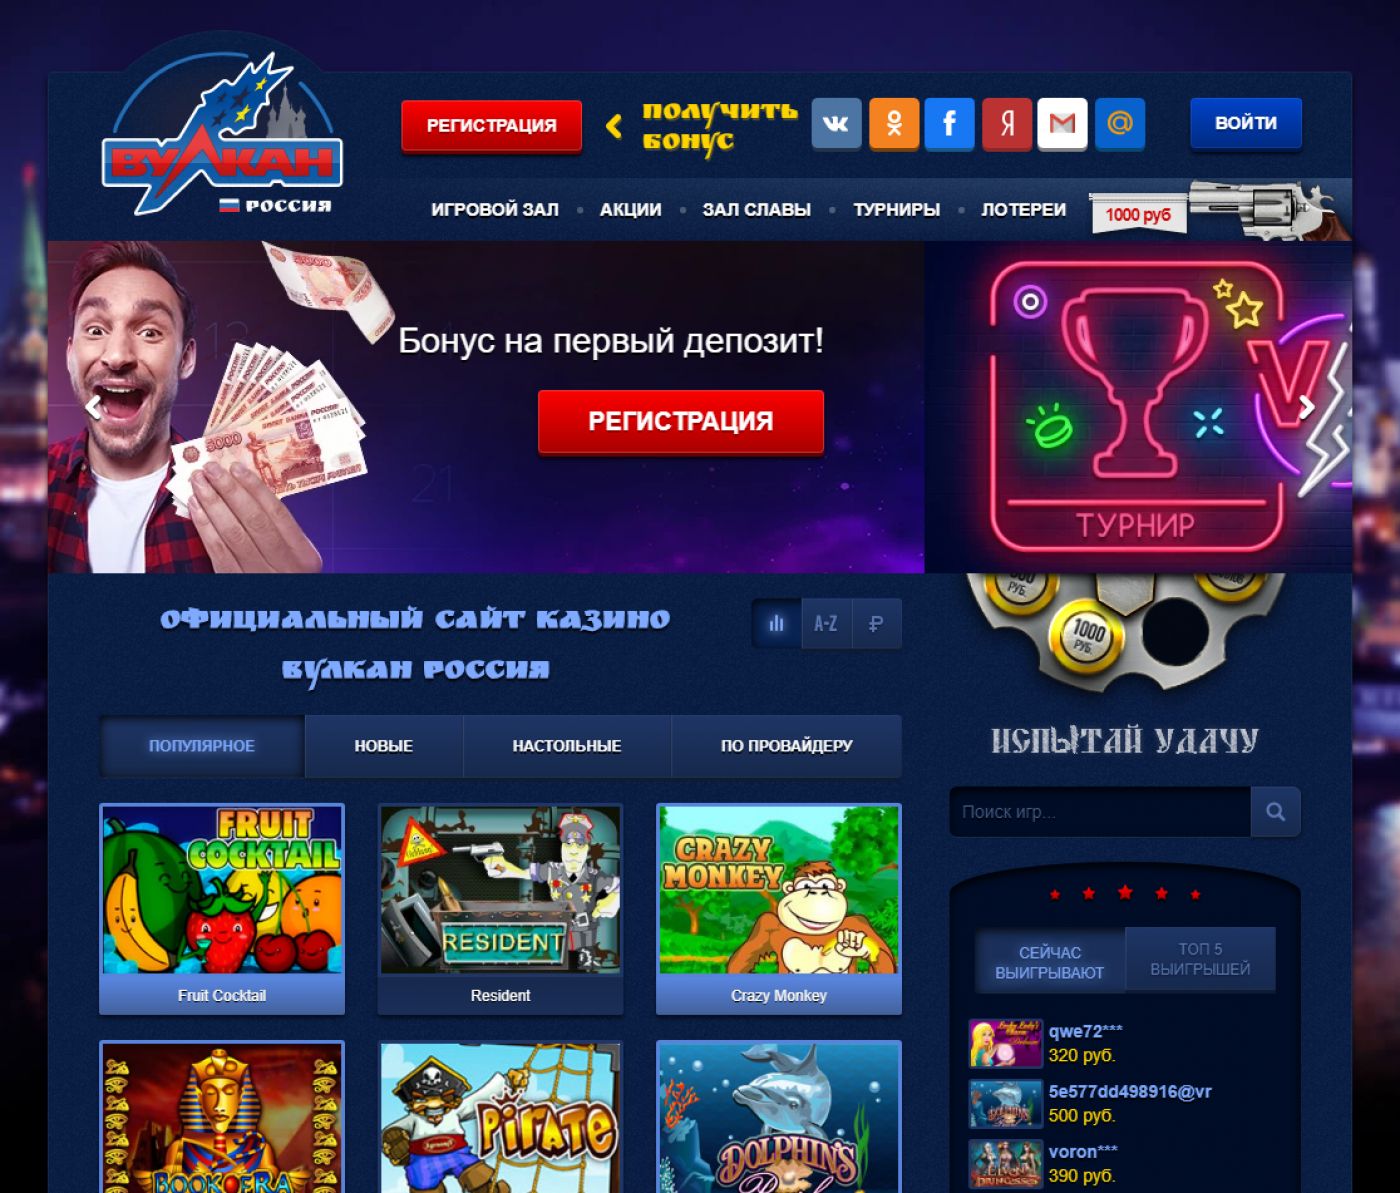 Законно ли играть в онлайн казино вулкан в россии play fortuna отзывы игроков play fortuna casino